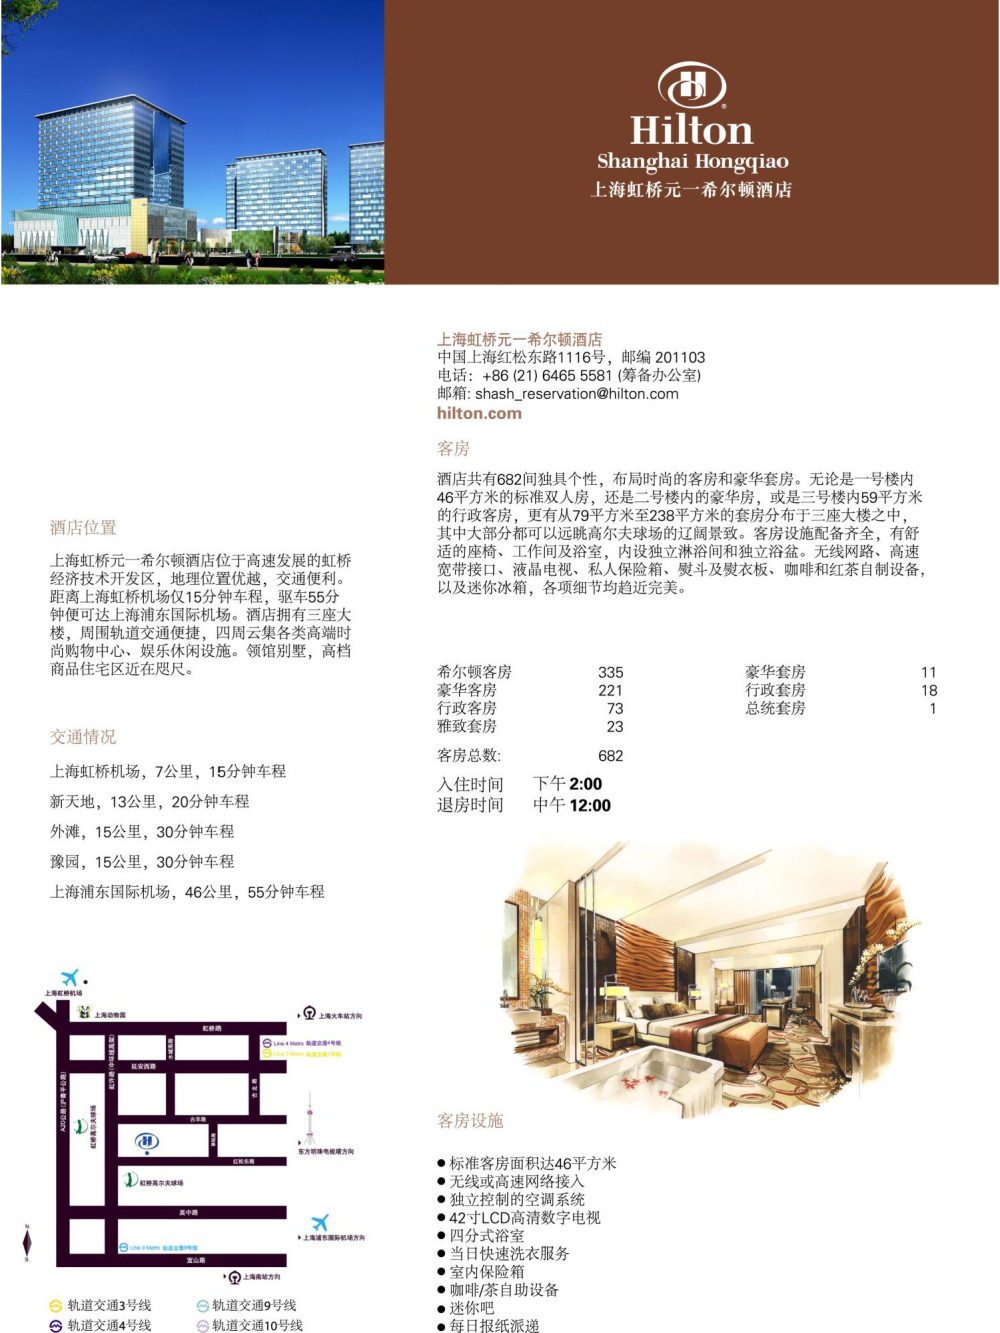 上海虹桥元一希尔顿酒店(Hilton Shanghai Hongqiao )_20100628091352203_页面_1.jpg